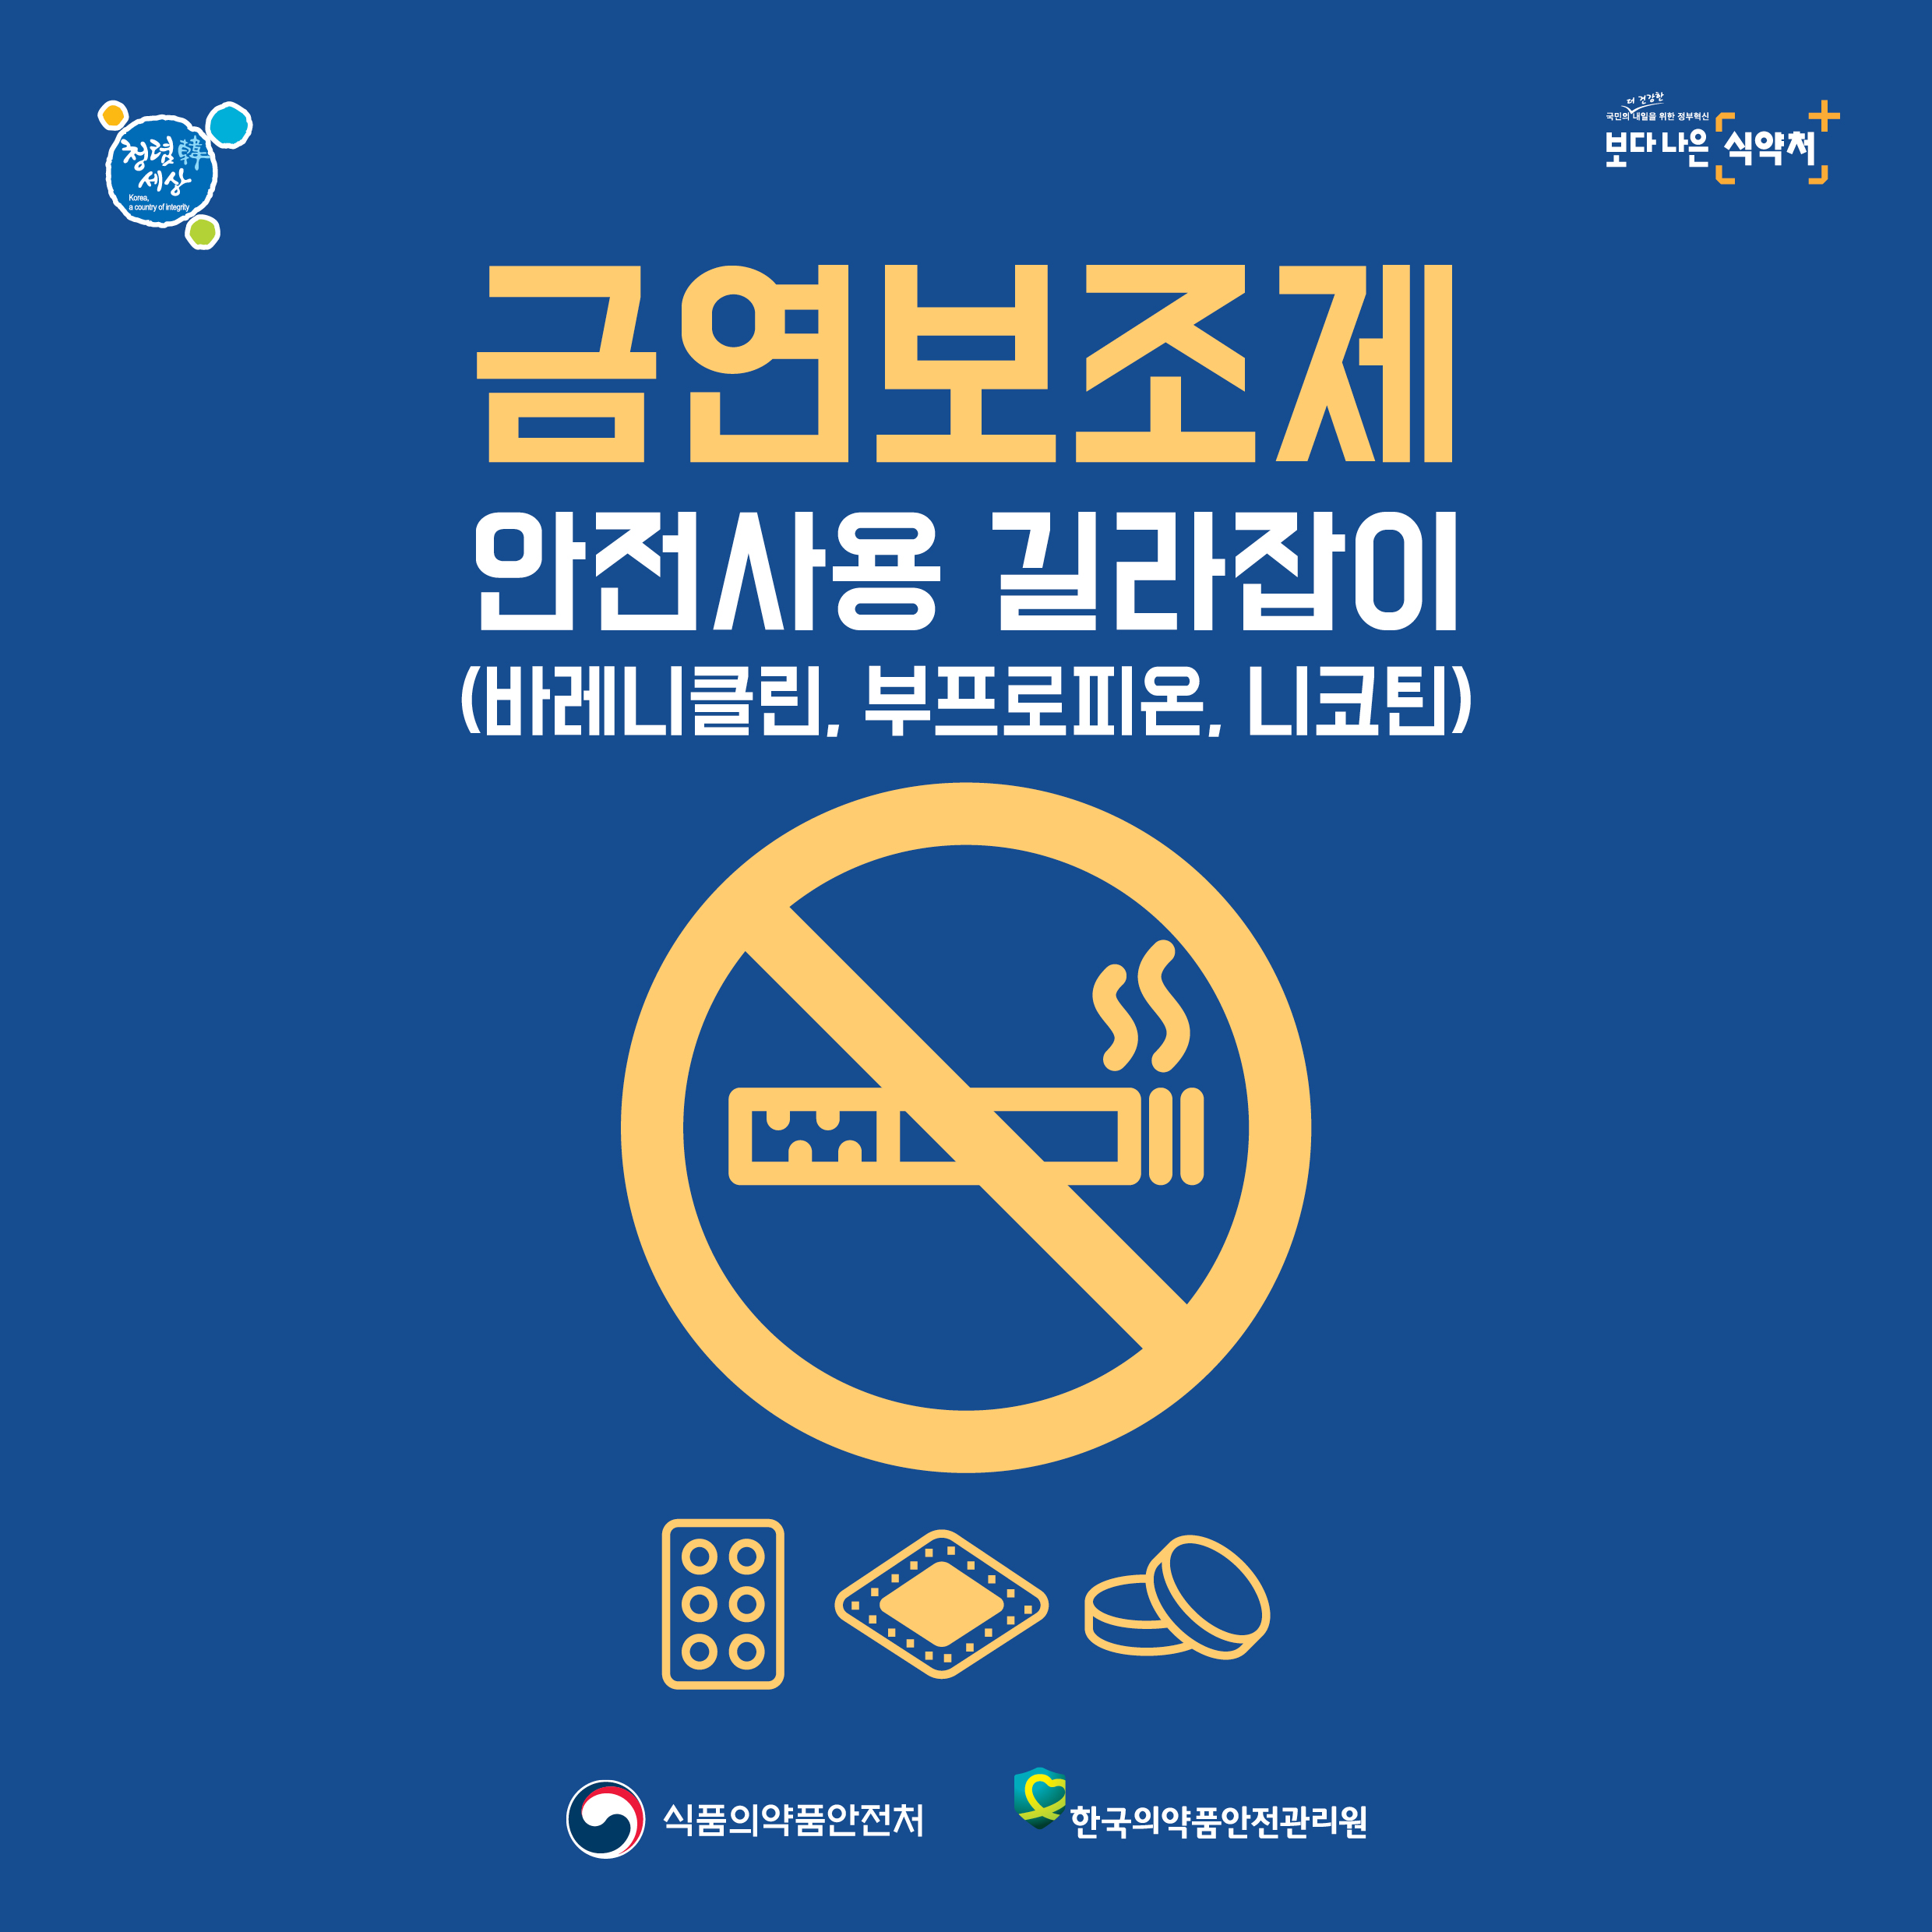 금연보조제 안전사용 길라잡이(바레니클린,부프로피온,니코틴) 식품의약품안전처, 한국의약품안전관리원